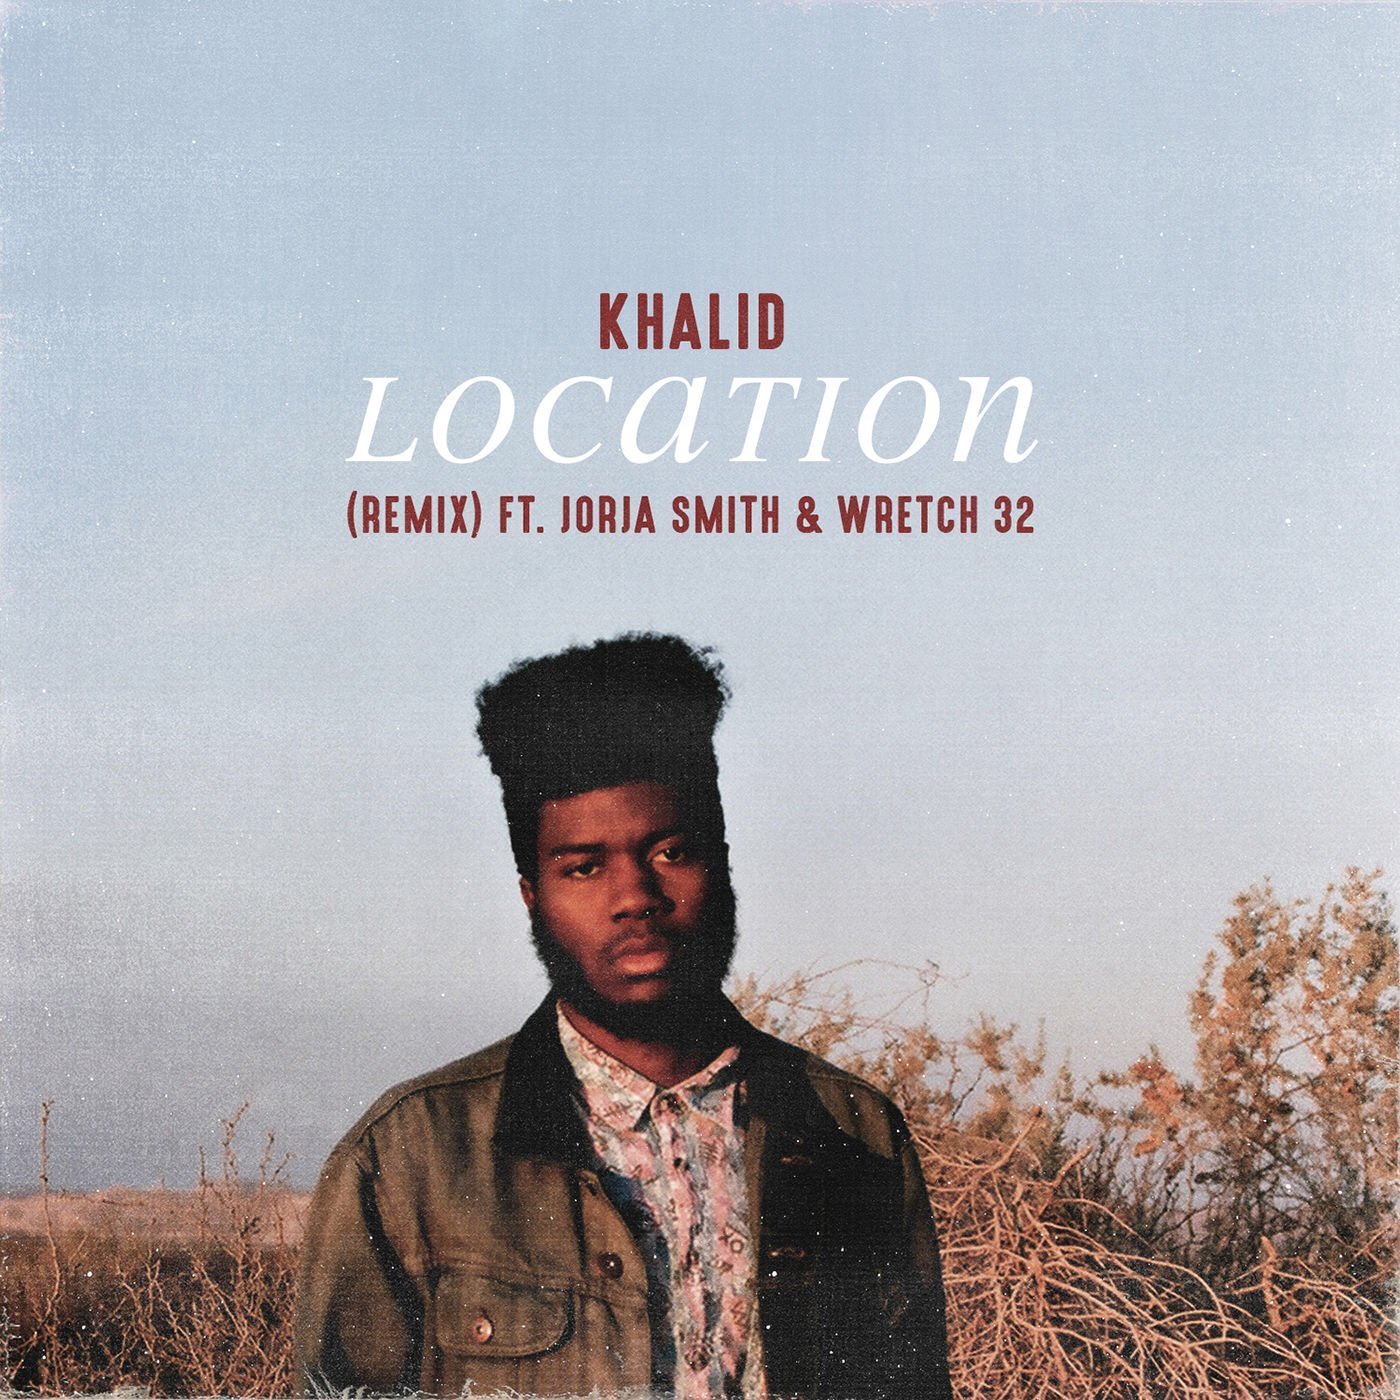 khalid location album